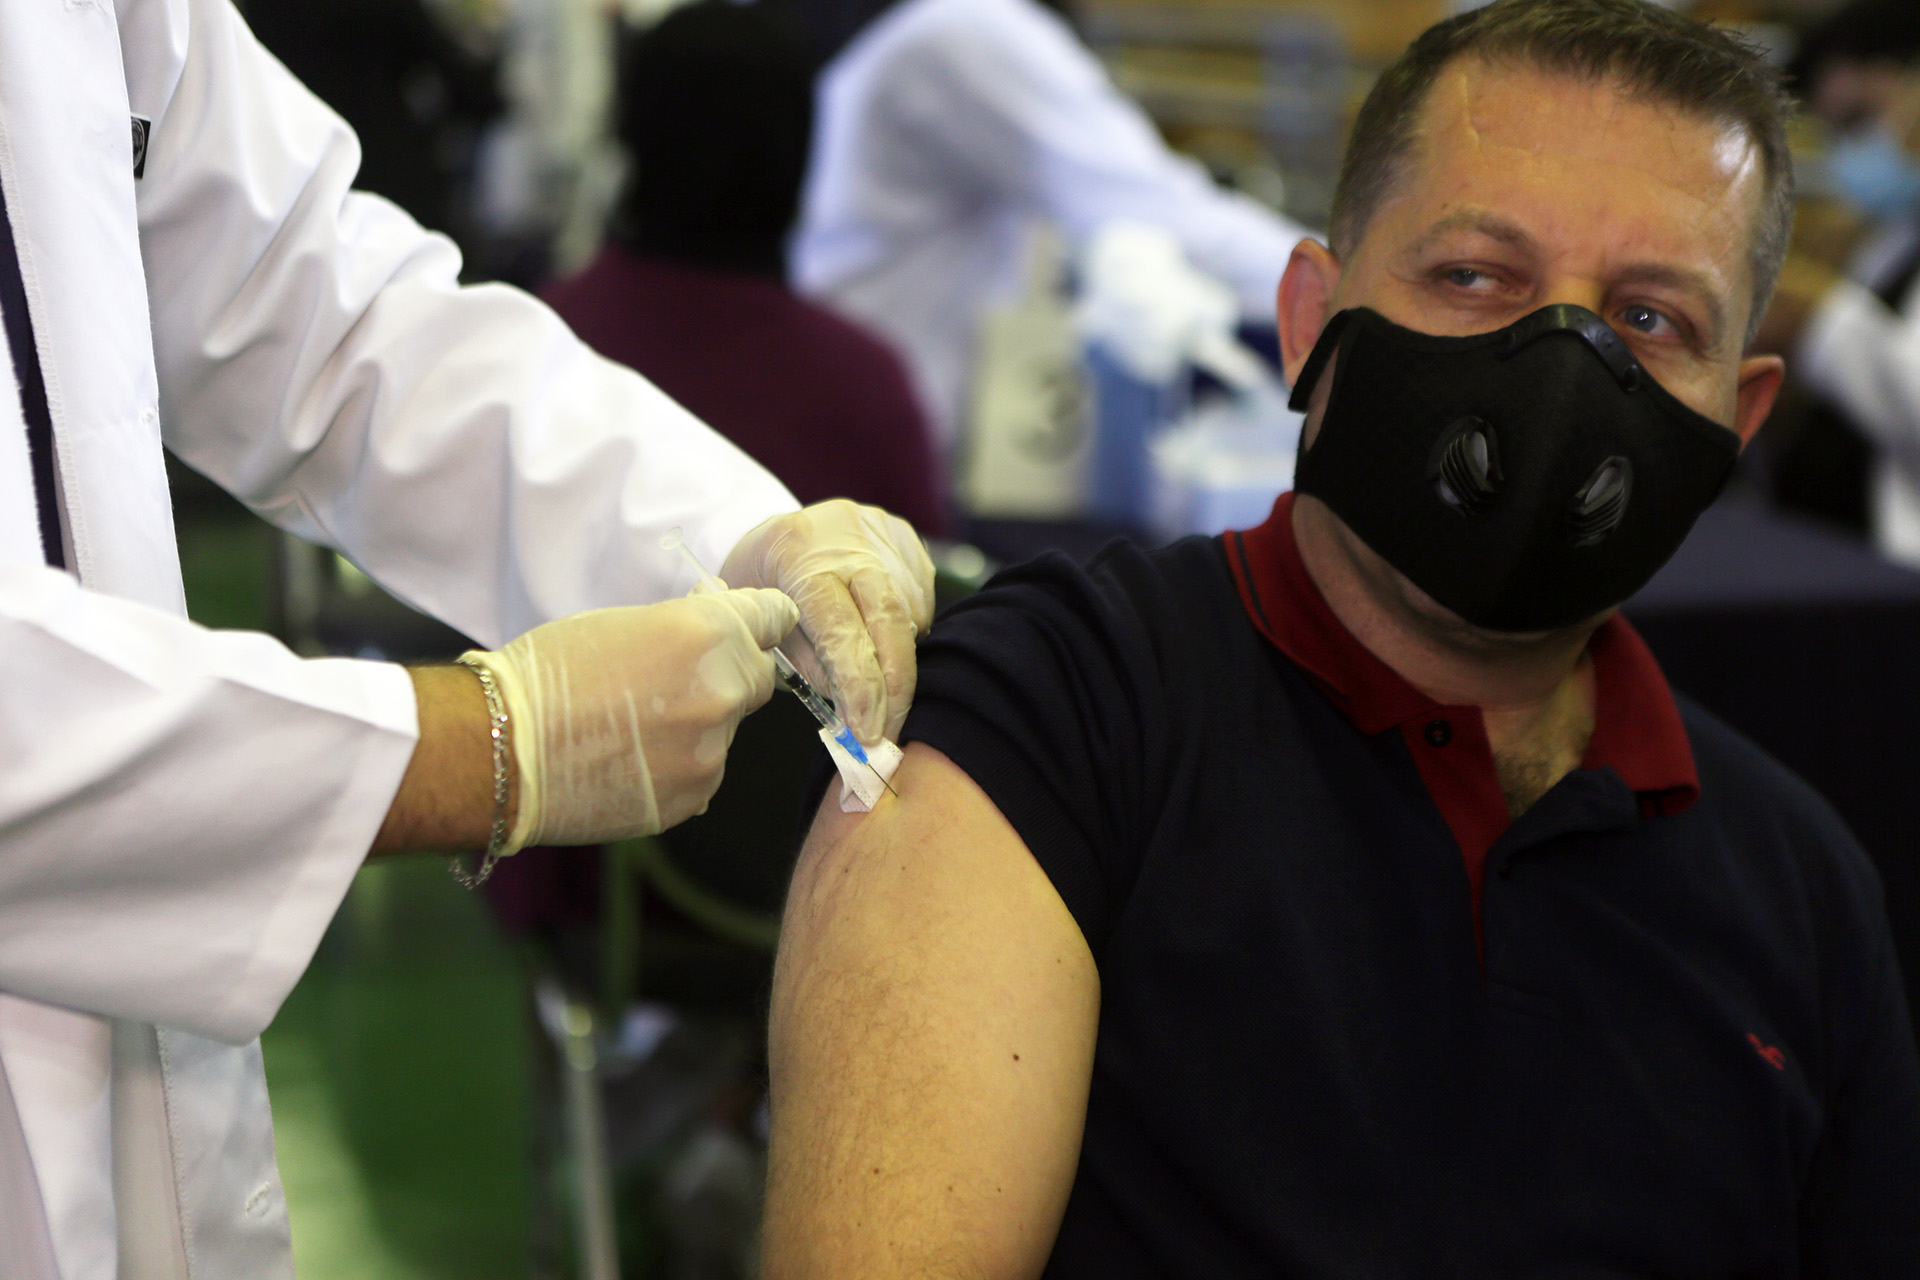 شخص يتلقى اللقاح المضاد لفيروس كورونا المستجد في جامعة العلوم التطبيقية. (صلاح ملكاوي/ المملكة)